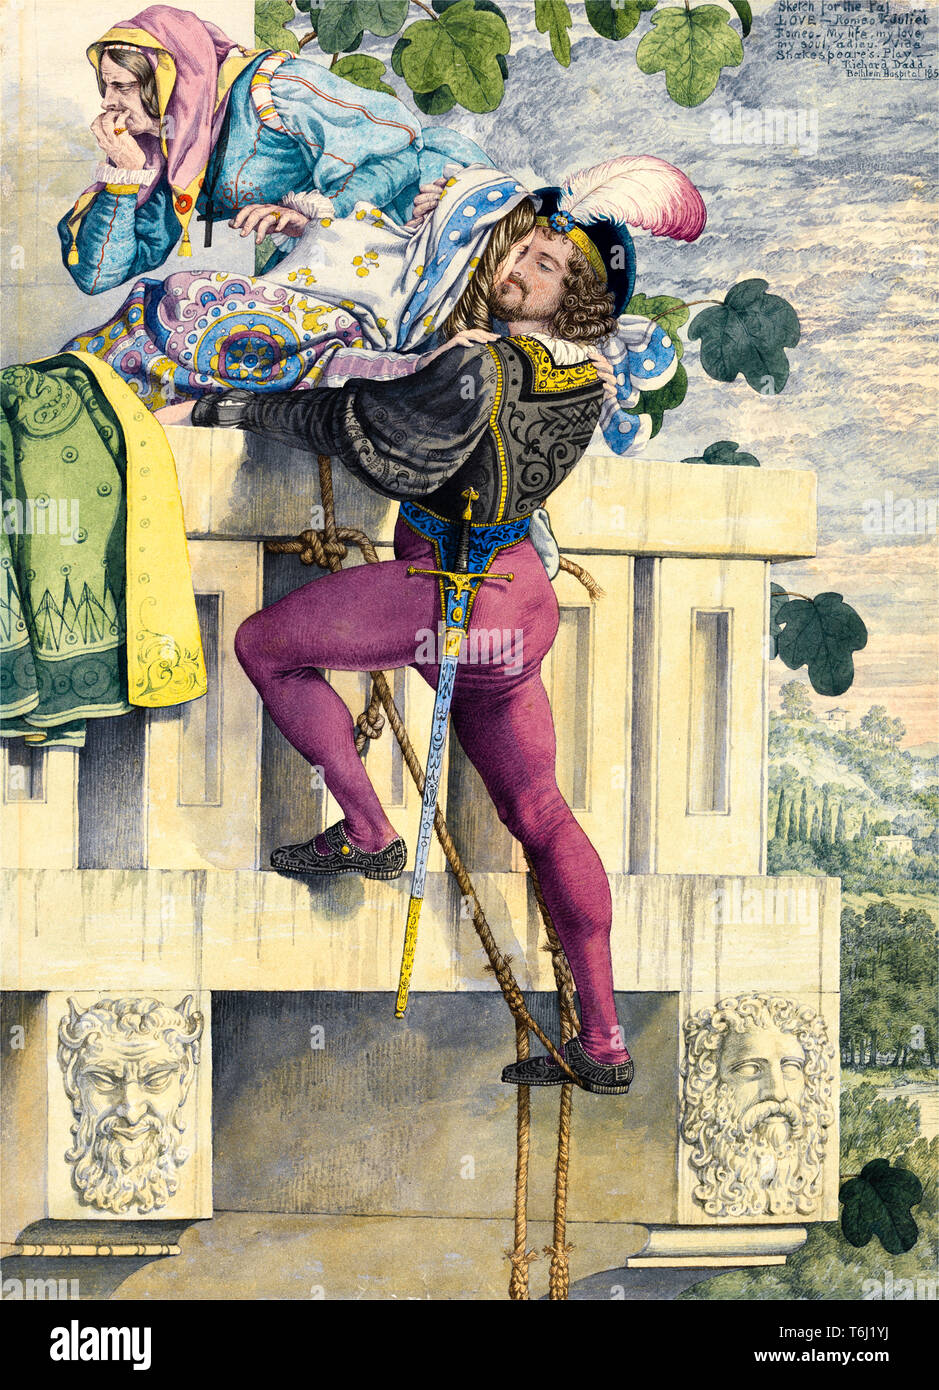 Capulet's Orchard: 'Romeo y Julieta', Acto III, Escena V, pintura por Richard Dadd, 1853 Foto de stock